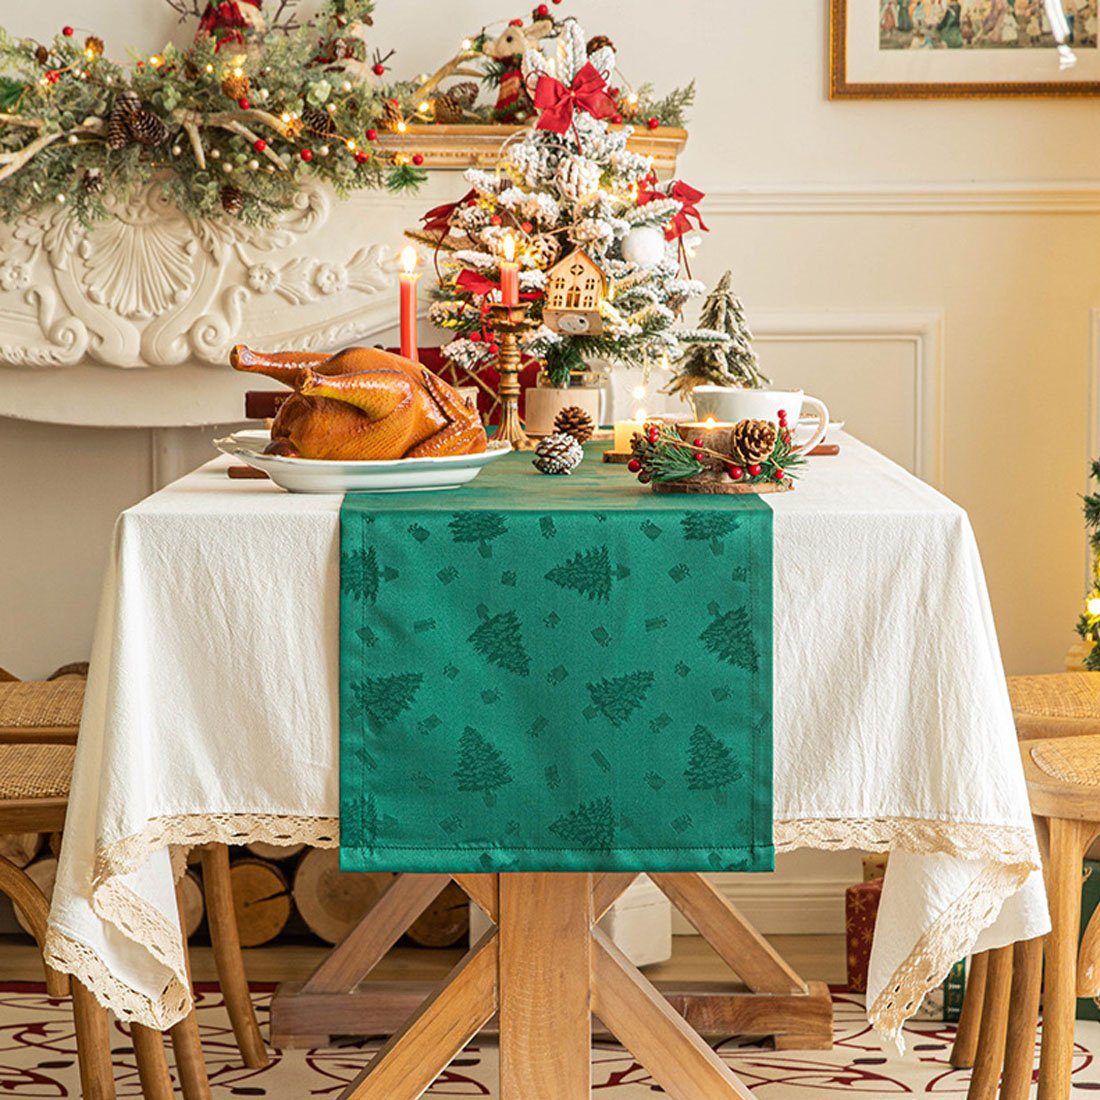 DÖRÖY grün Gedruckte Tischflaggen Tischdecke,Festliche Party Weihnachtsdekoration Tischläufer